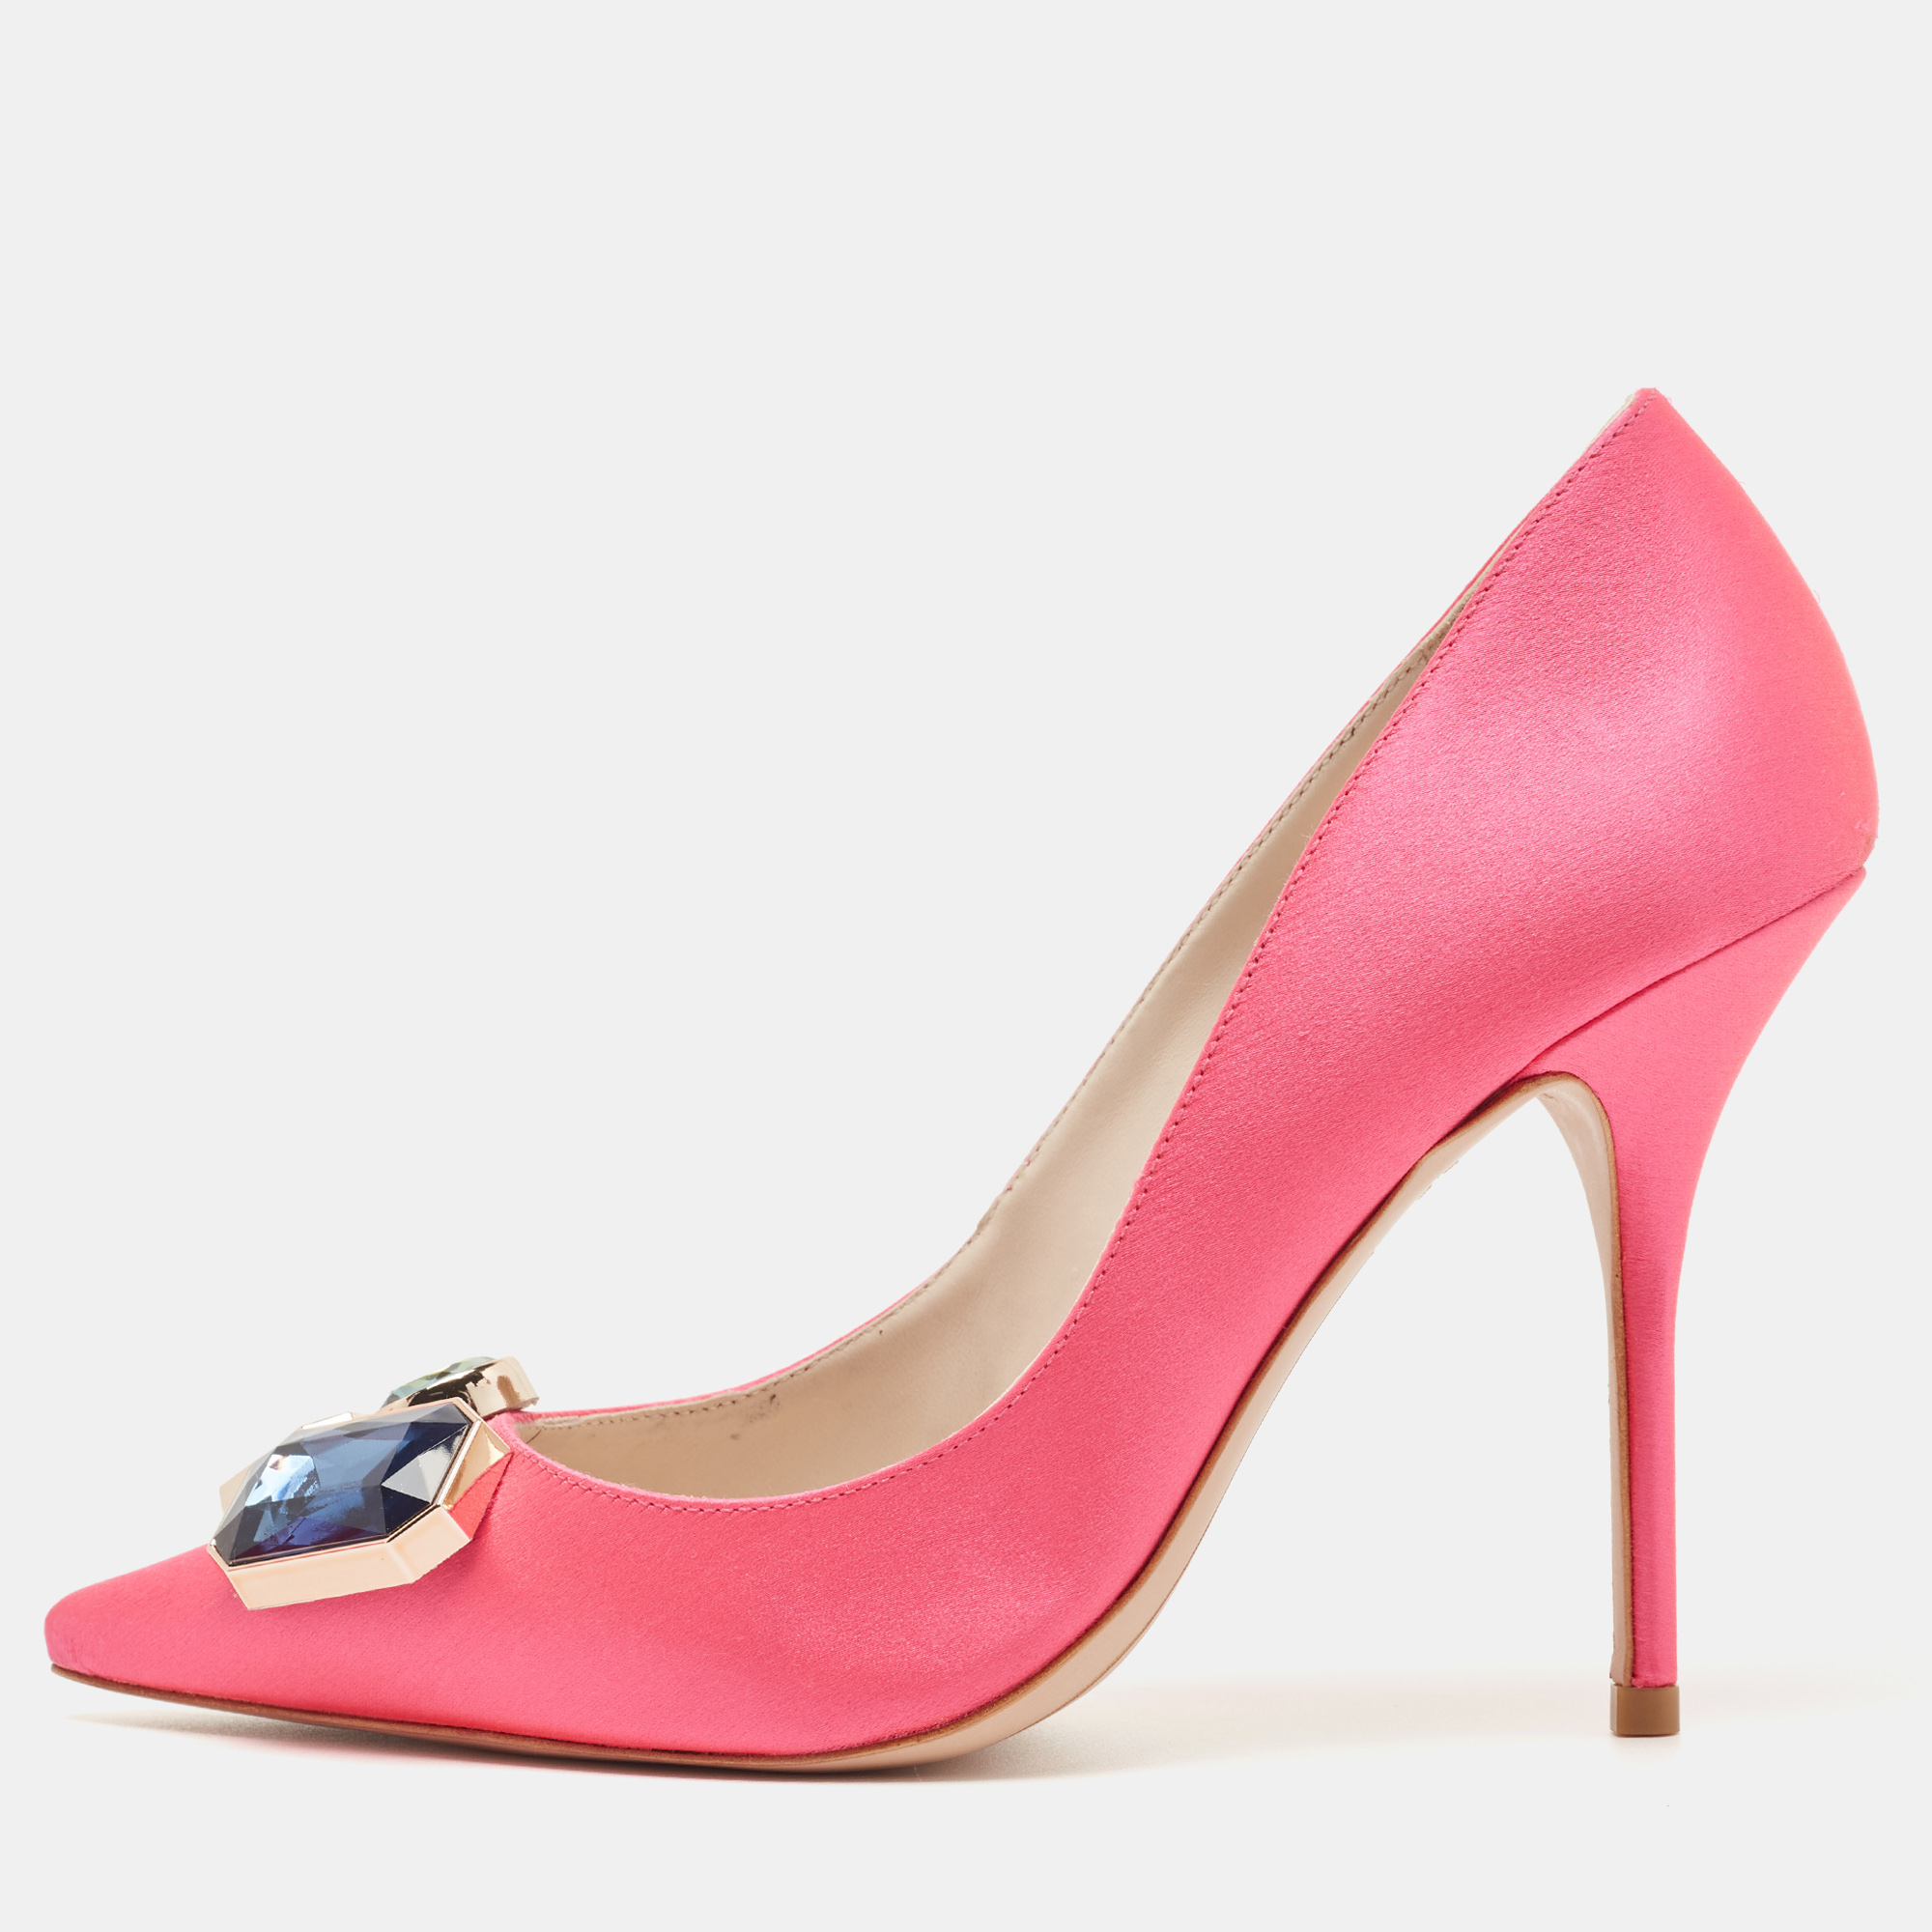 Sophia Webster Hot Pink Satin Lola Gem Pointed Toe Pumps Size 39.5